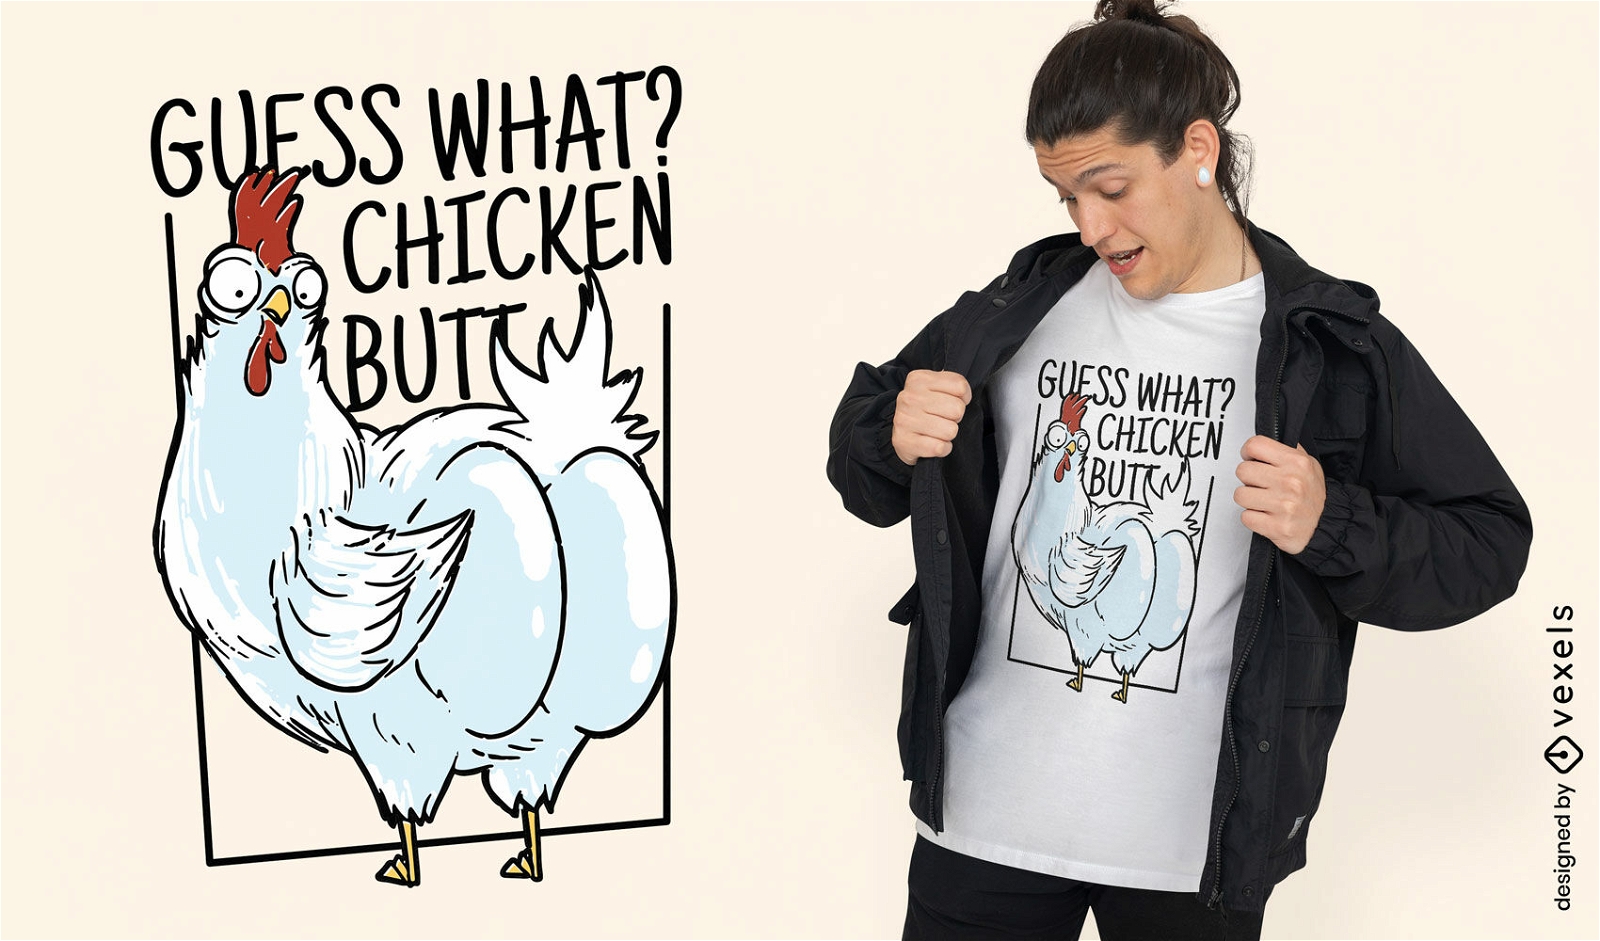 Dise?o de camiseta de trasero de pollo.